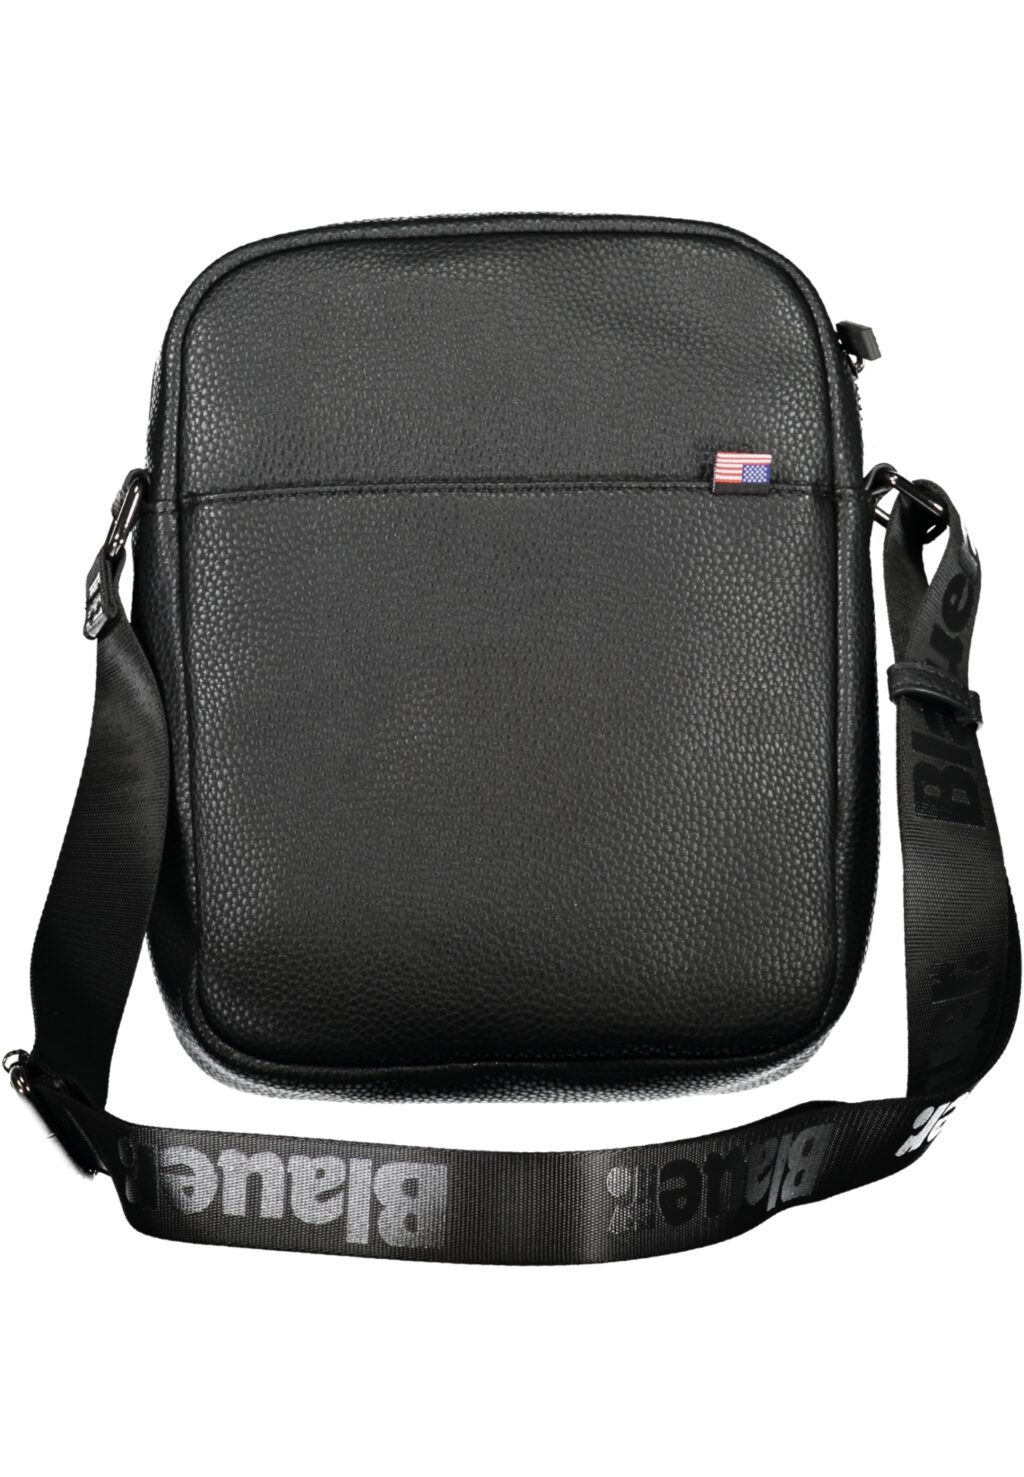 BLAUER MEN'S BLACK SHOULDER BAG F3ELK02MET_NEBLK